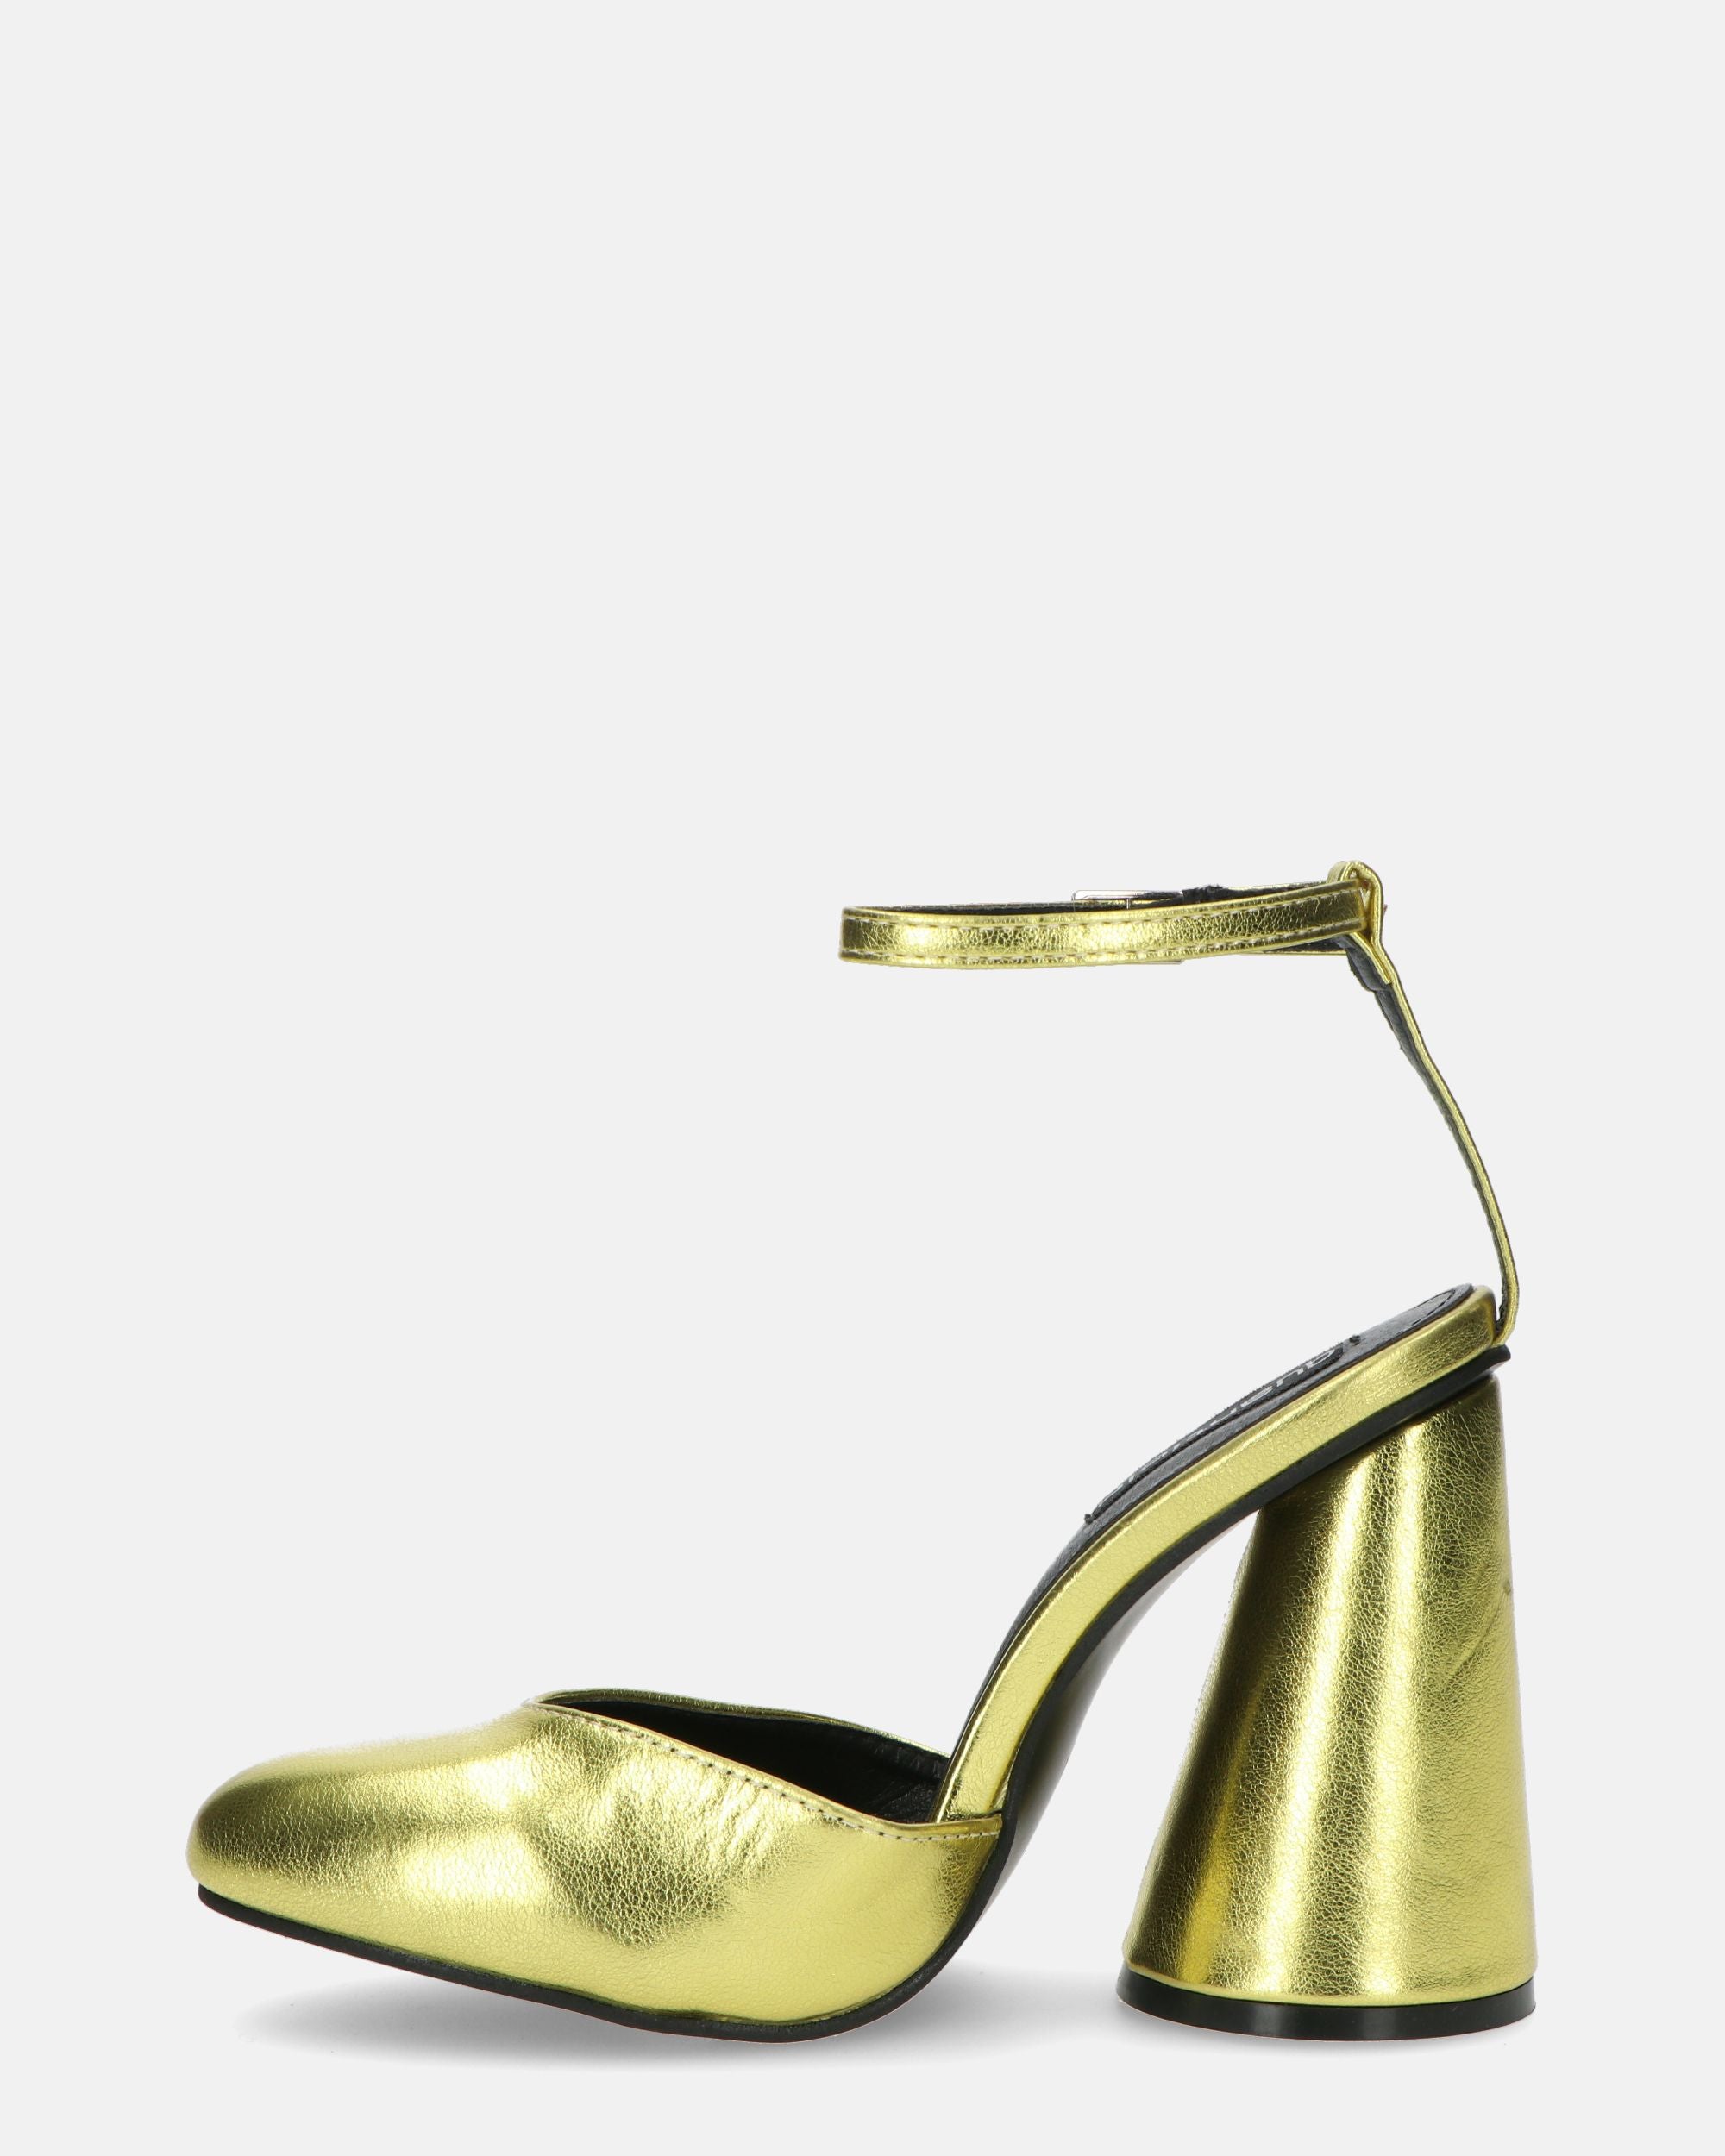 MAYBELLE - sandali in glassy dorato con tacco cilindrico